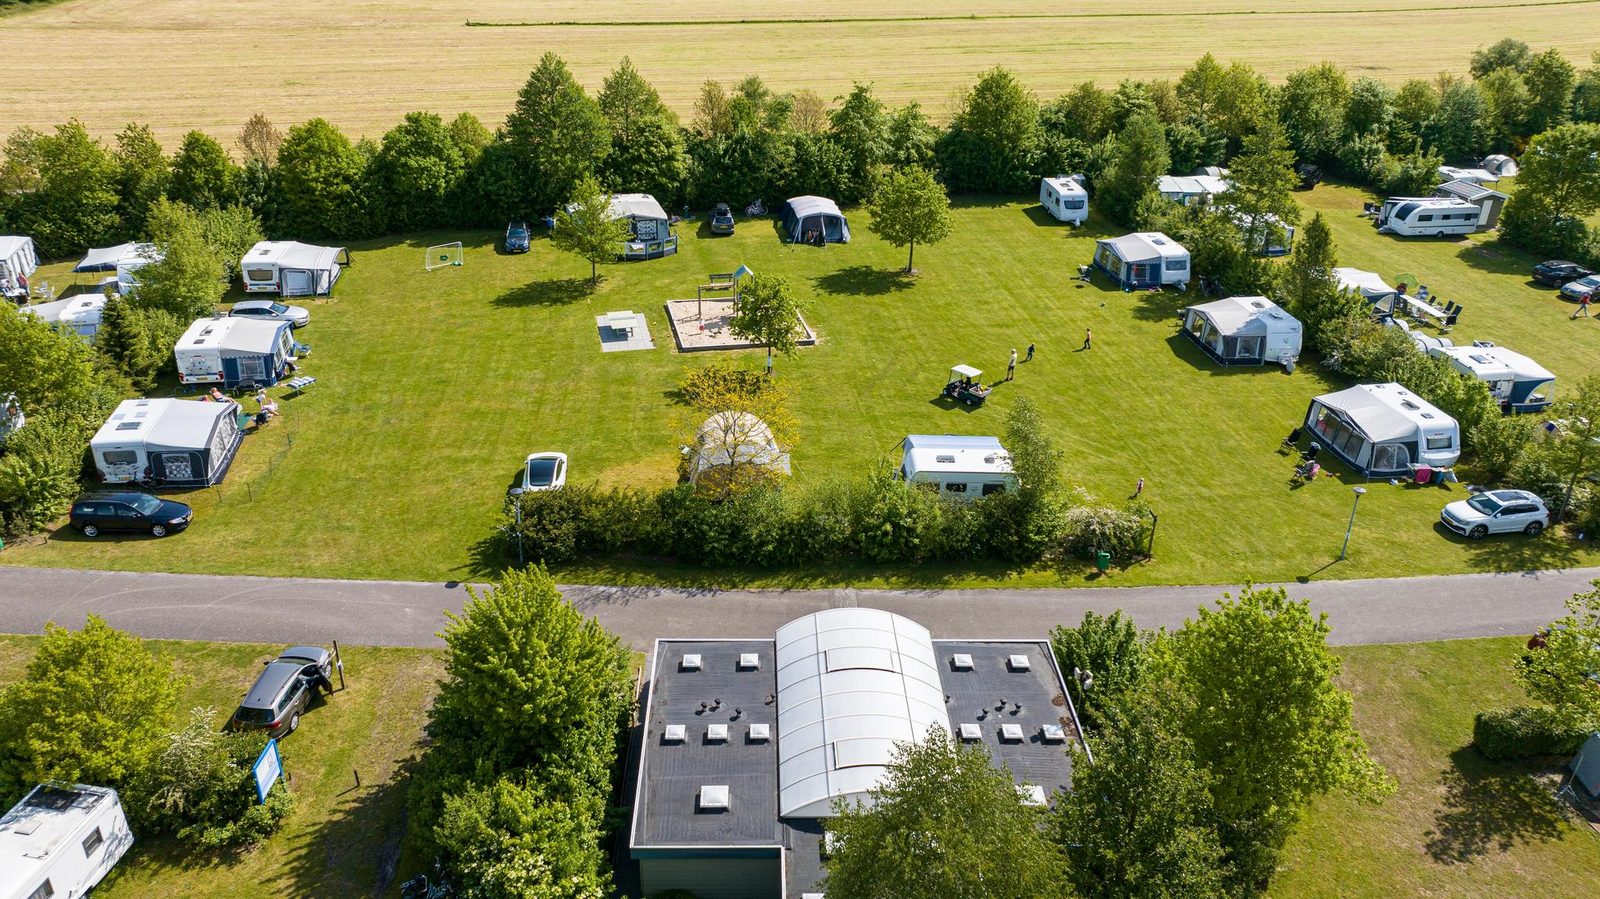 Pinksteren - comfort kampeerplaats met privé sanitair 2024